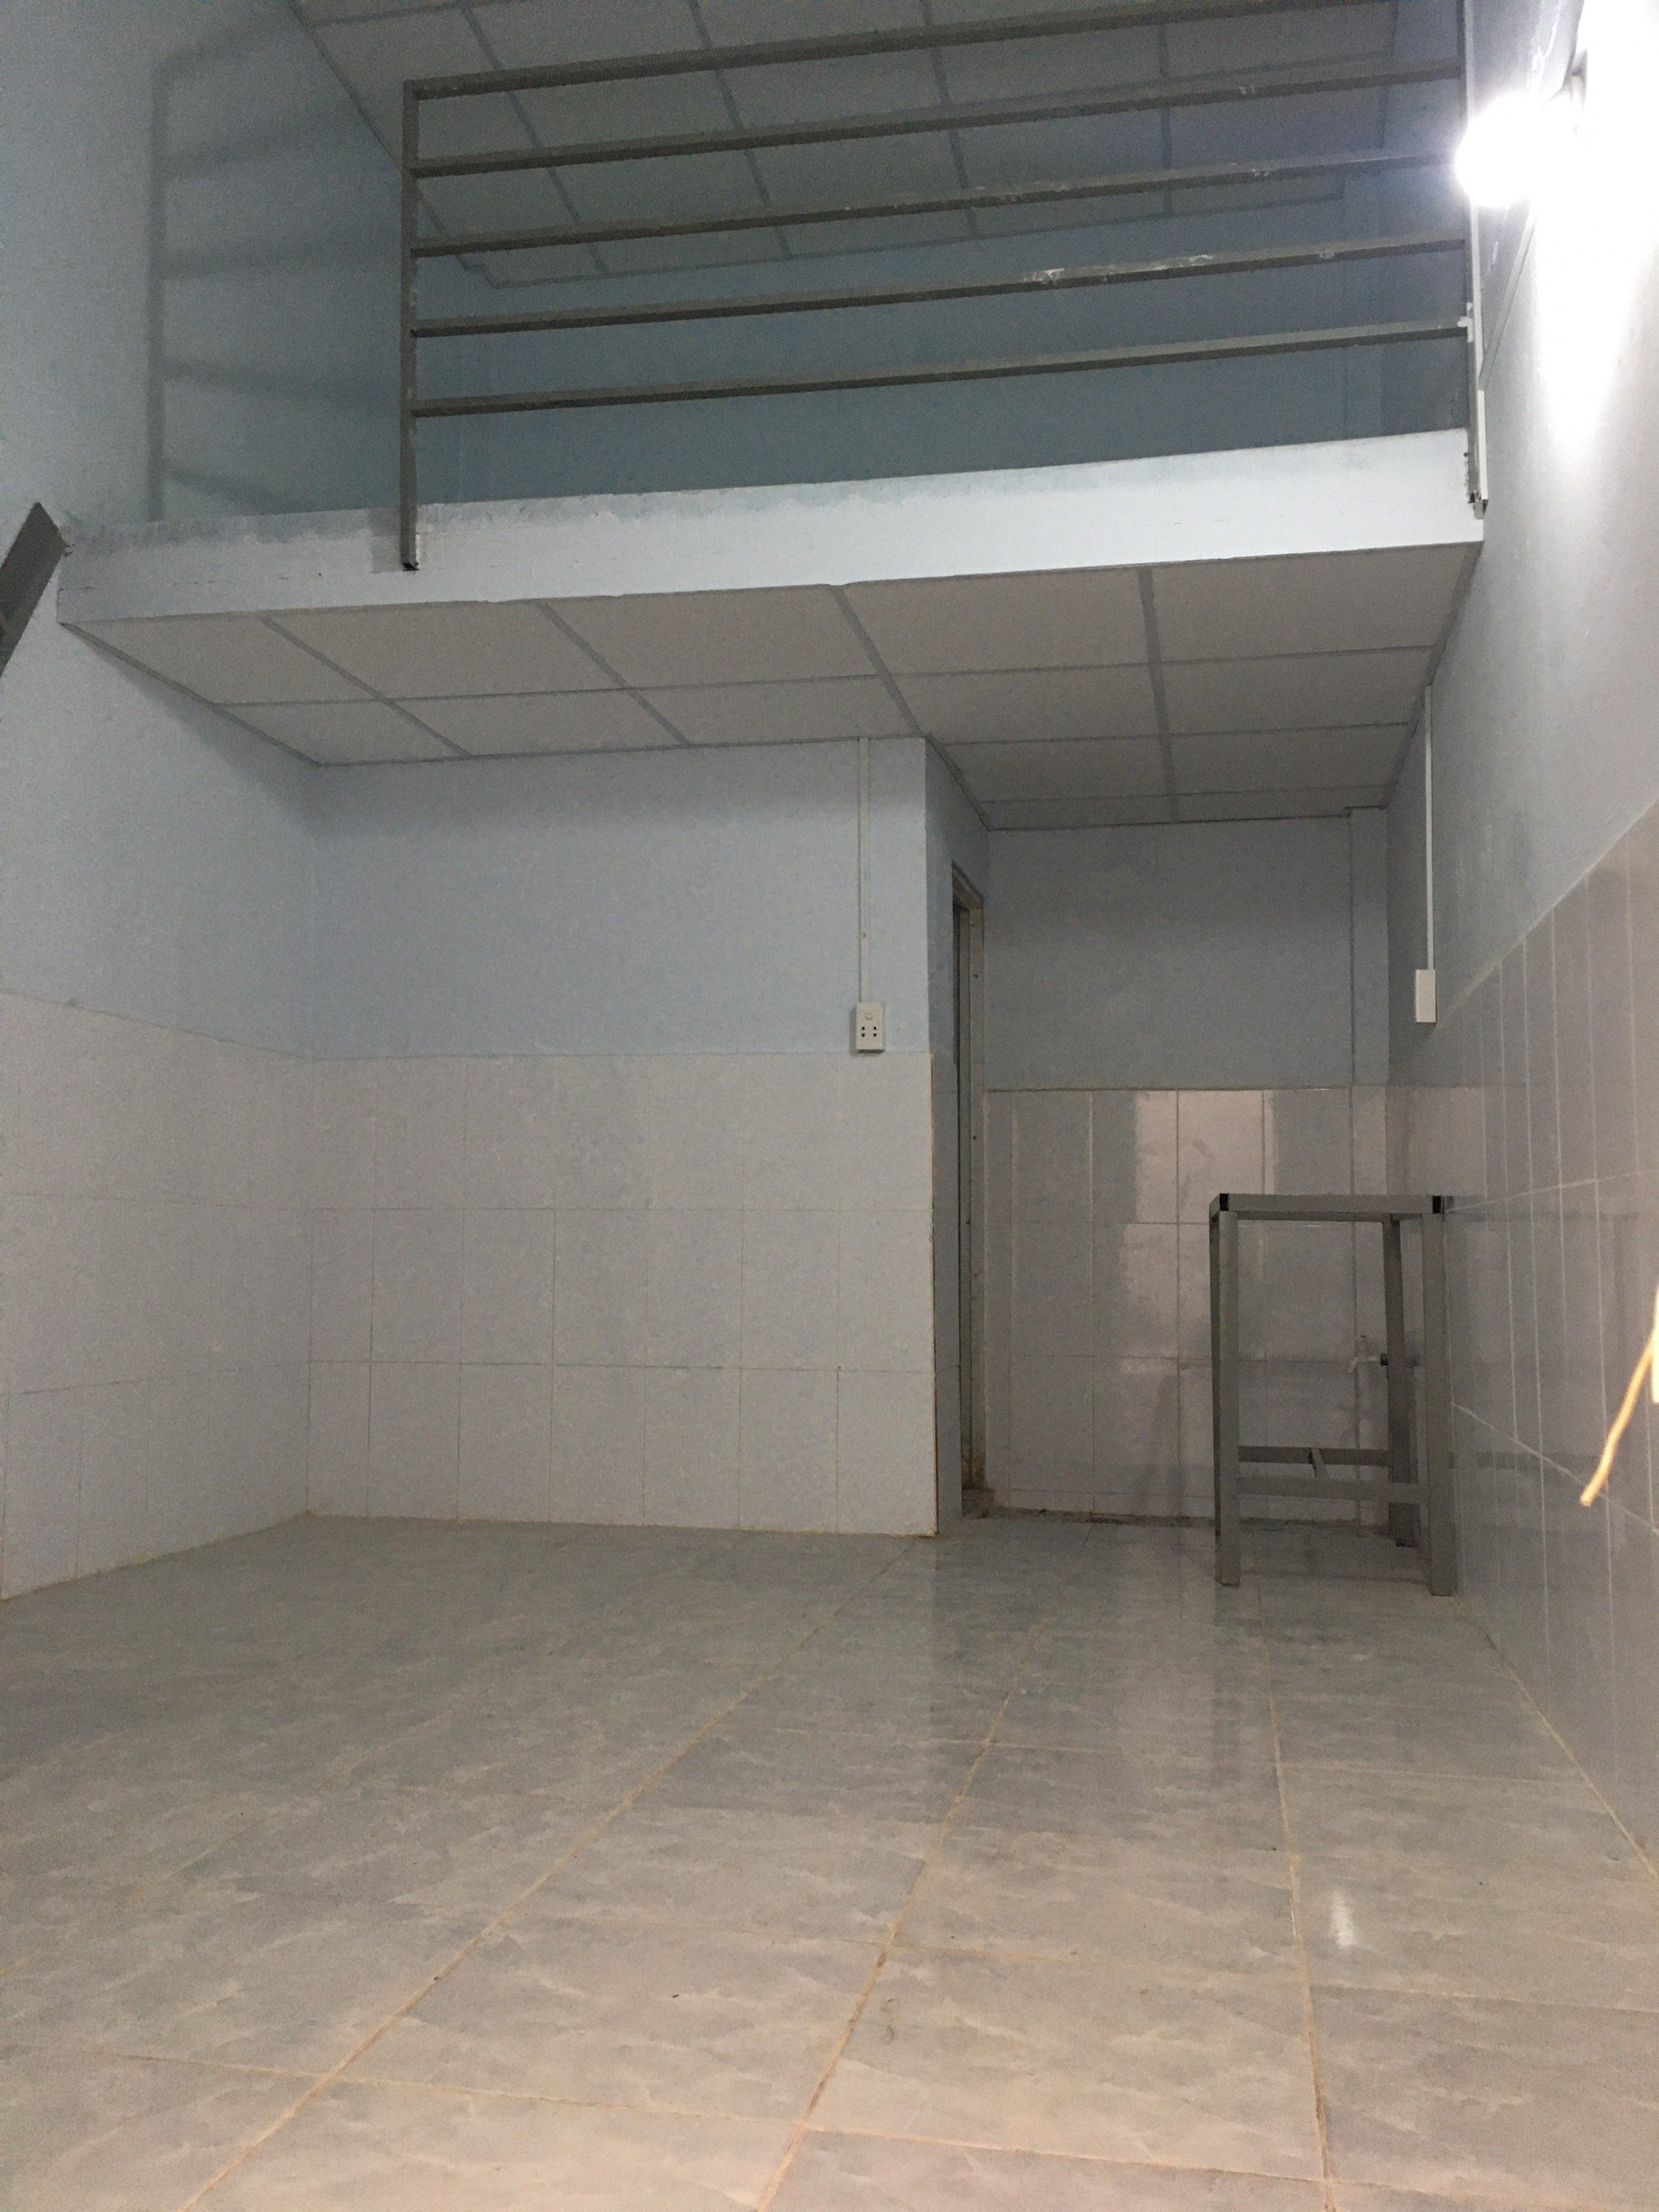 Cho thuê Phòng trọ đường TL15,Thạnh Lộc, Q12, có gác lửng + toilet riêng, yên tĩnh, thích hợp cho SV,NVVP,CNV 2